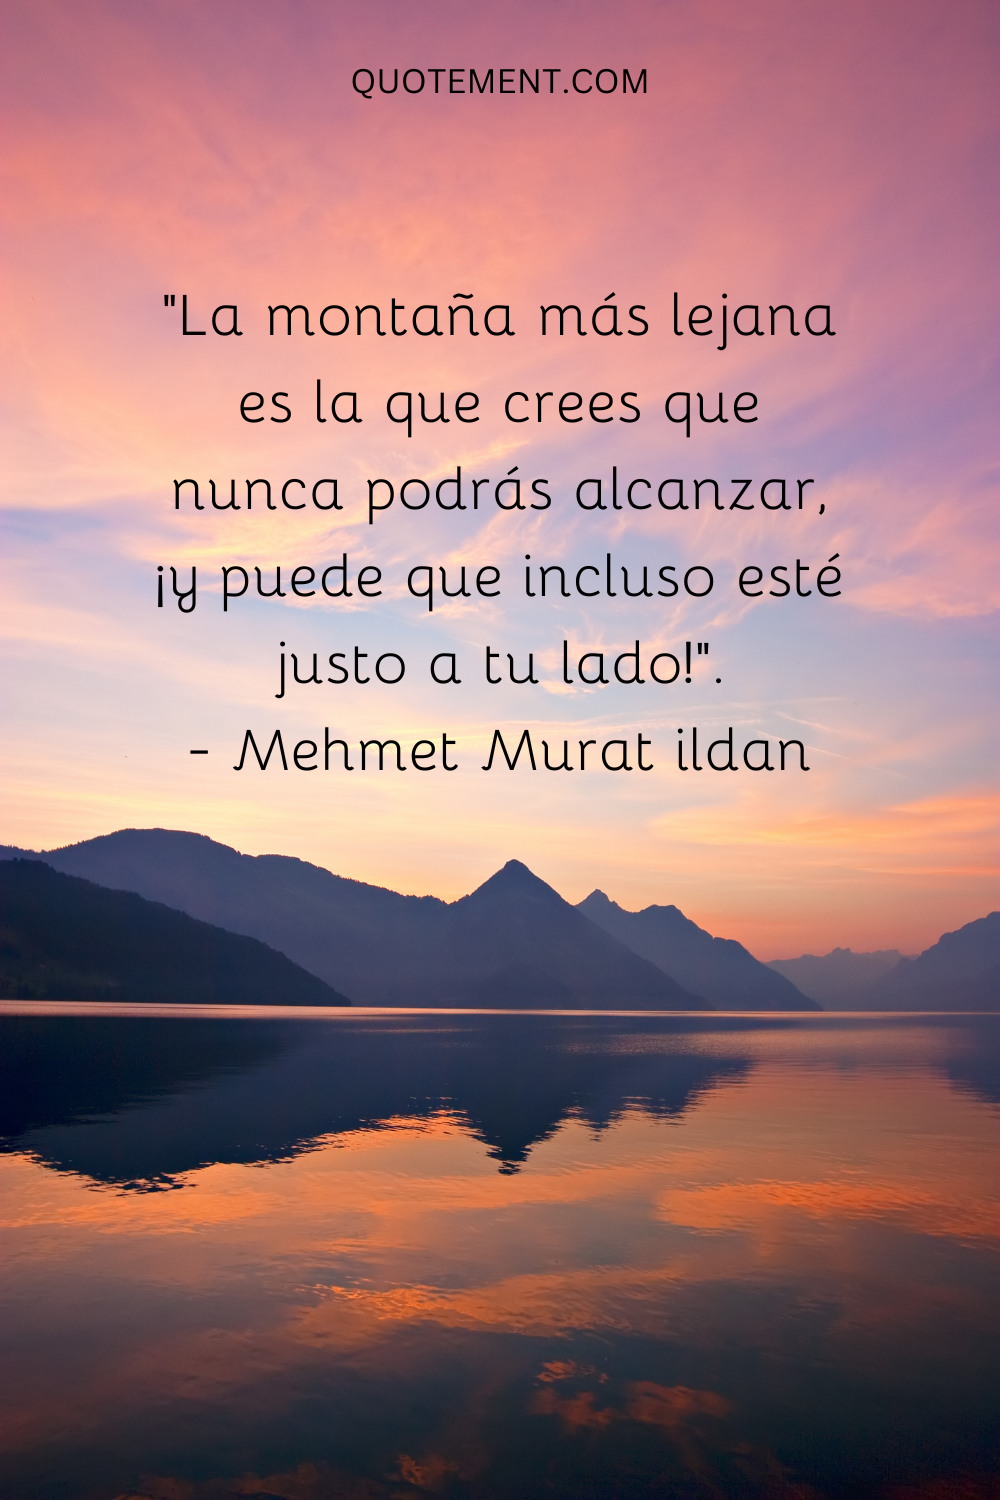 "La montaña más lejana es la que crees que nunca podrás alcanzar, ¡y puede que incluso esté justo a tu lado!". - Mehmet Murat ildan